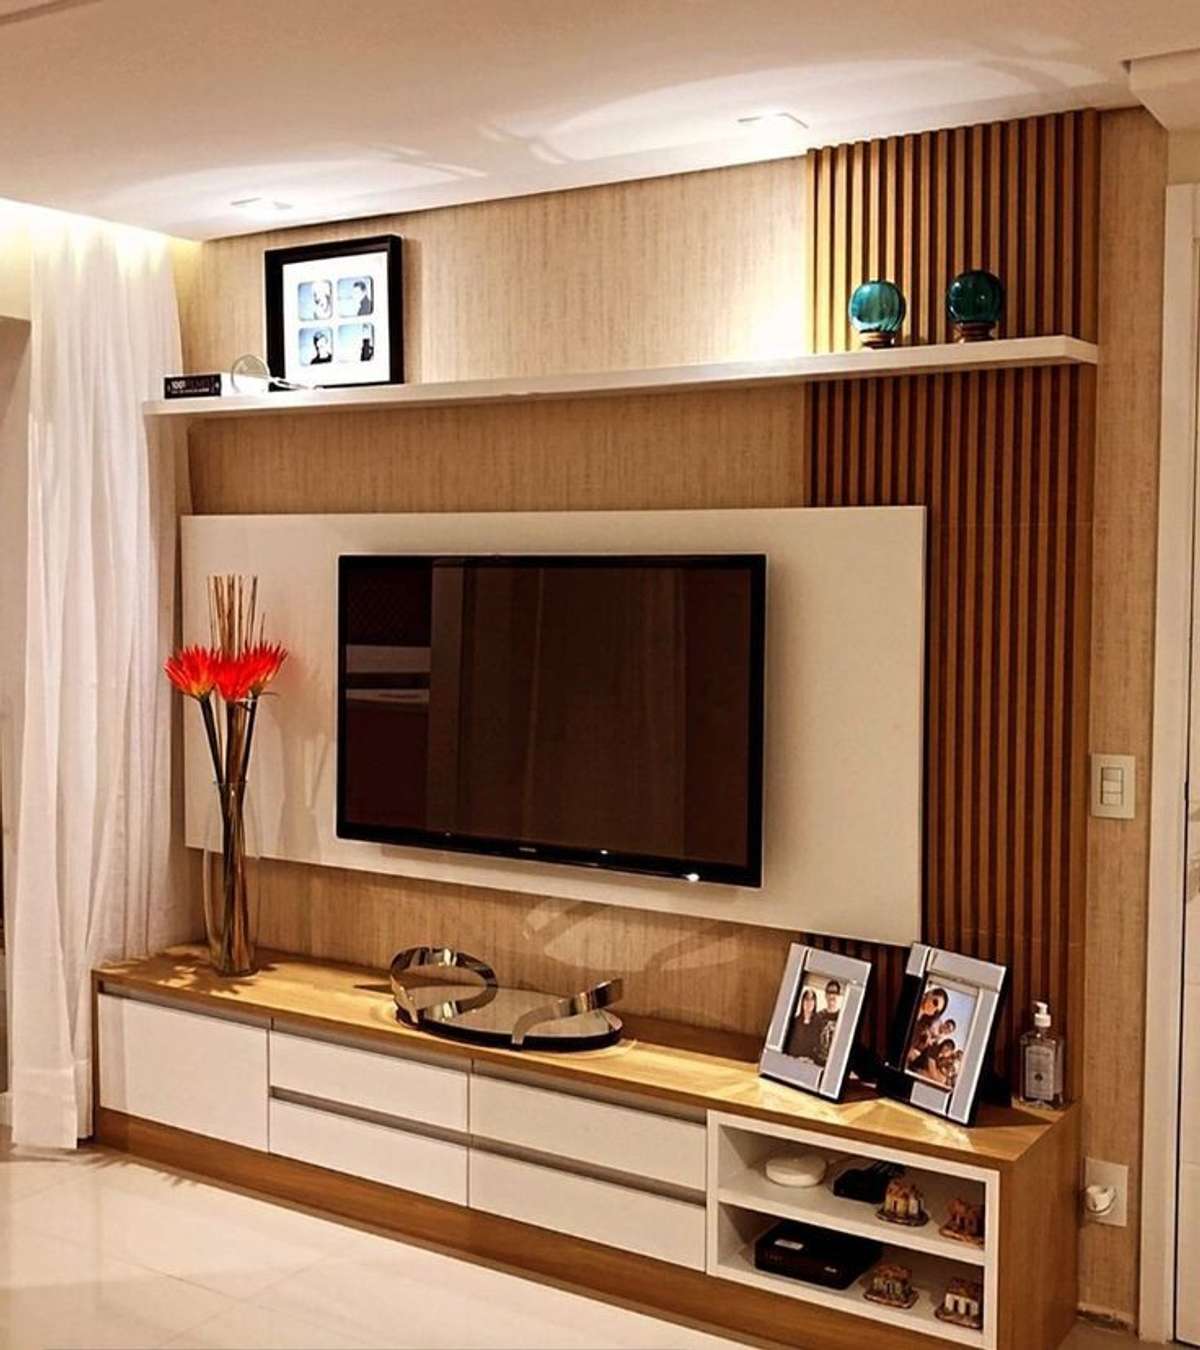 Living, Storage Designs by Interior Designer shahul AM, Thrissur | Kolo